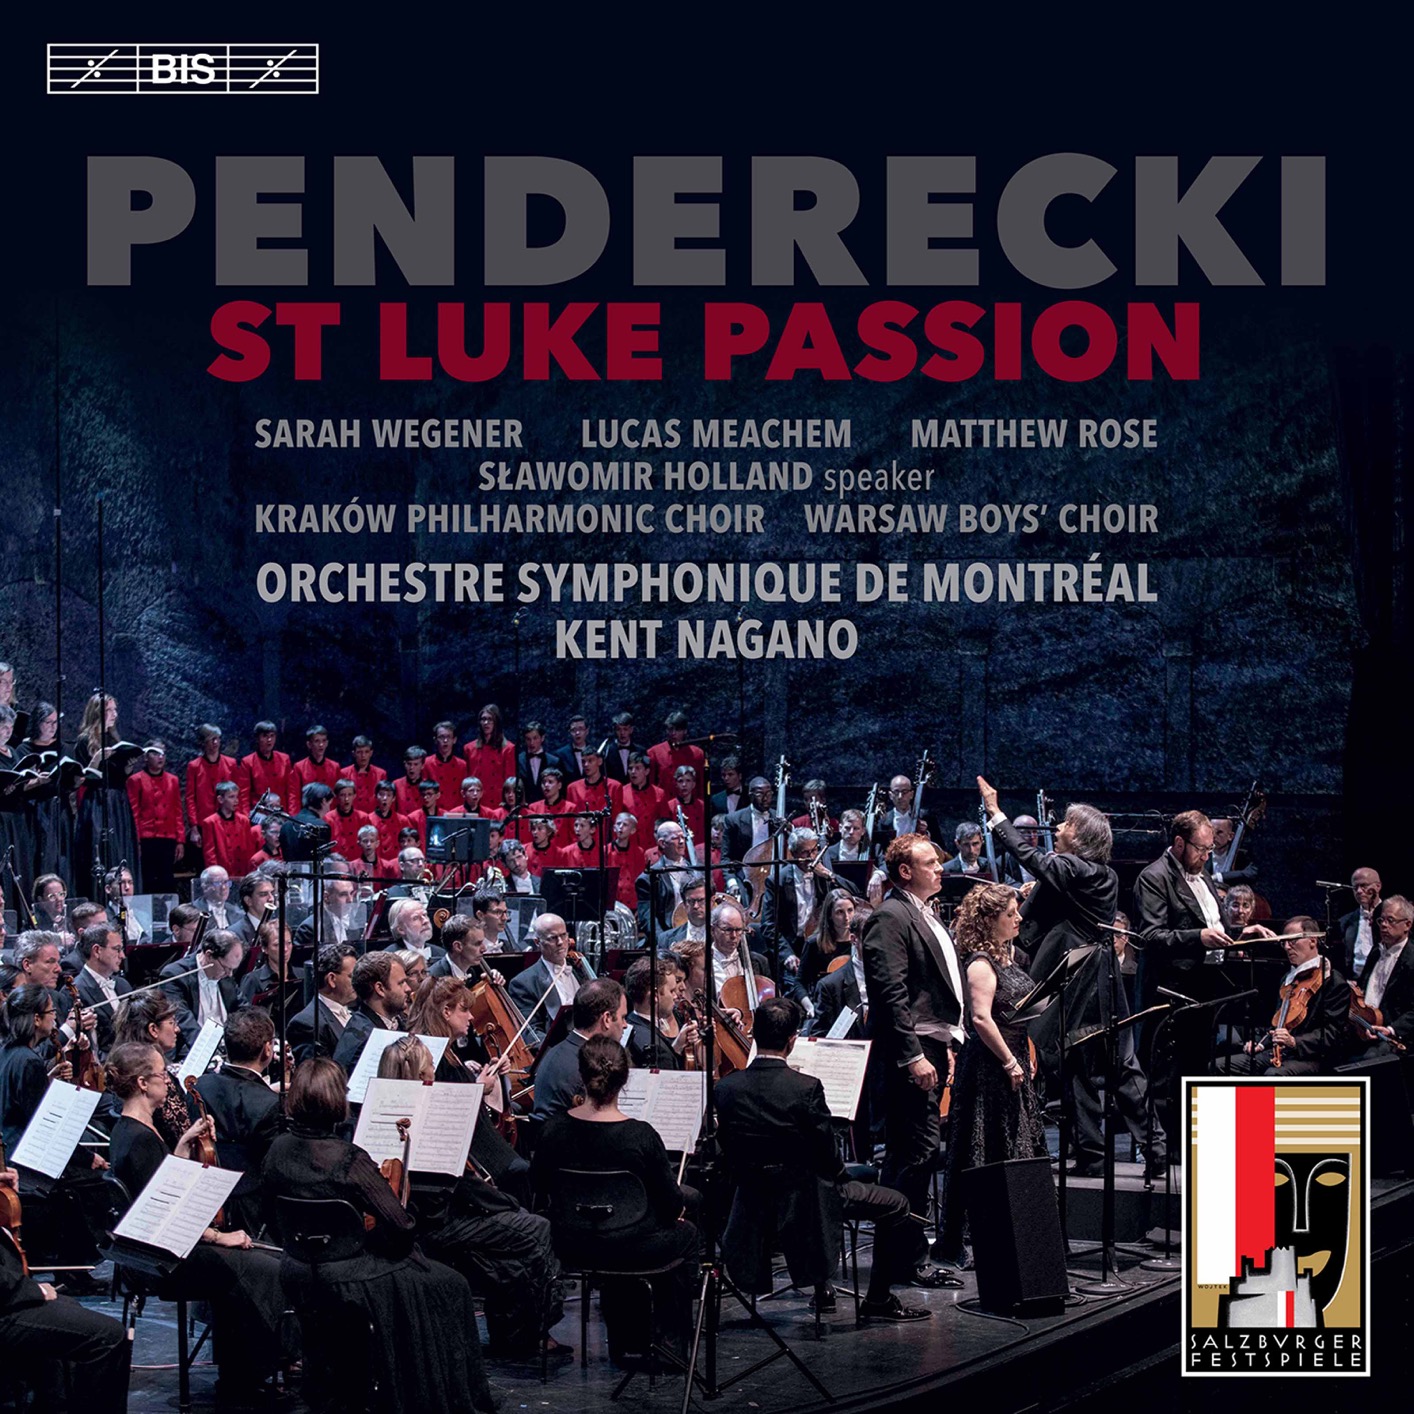 Orchestre Symphonique De Montreal & Kent Nagano - Penderecki - St. Luke Passion (Live) (2020) [FLAC 24bit/96kHz]